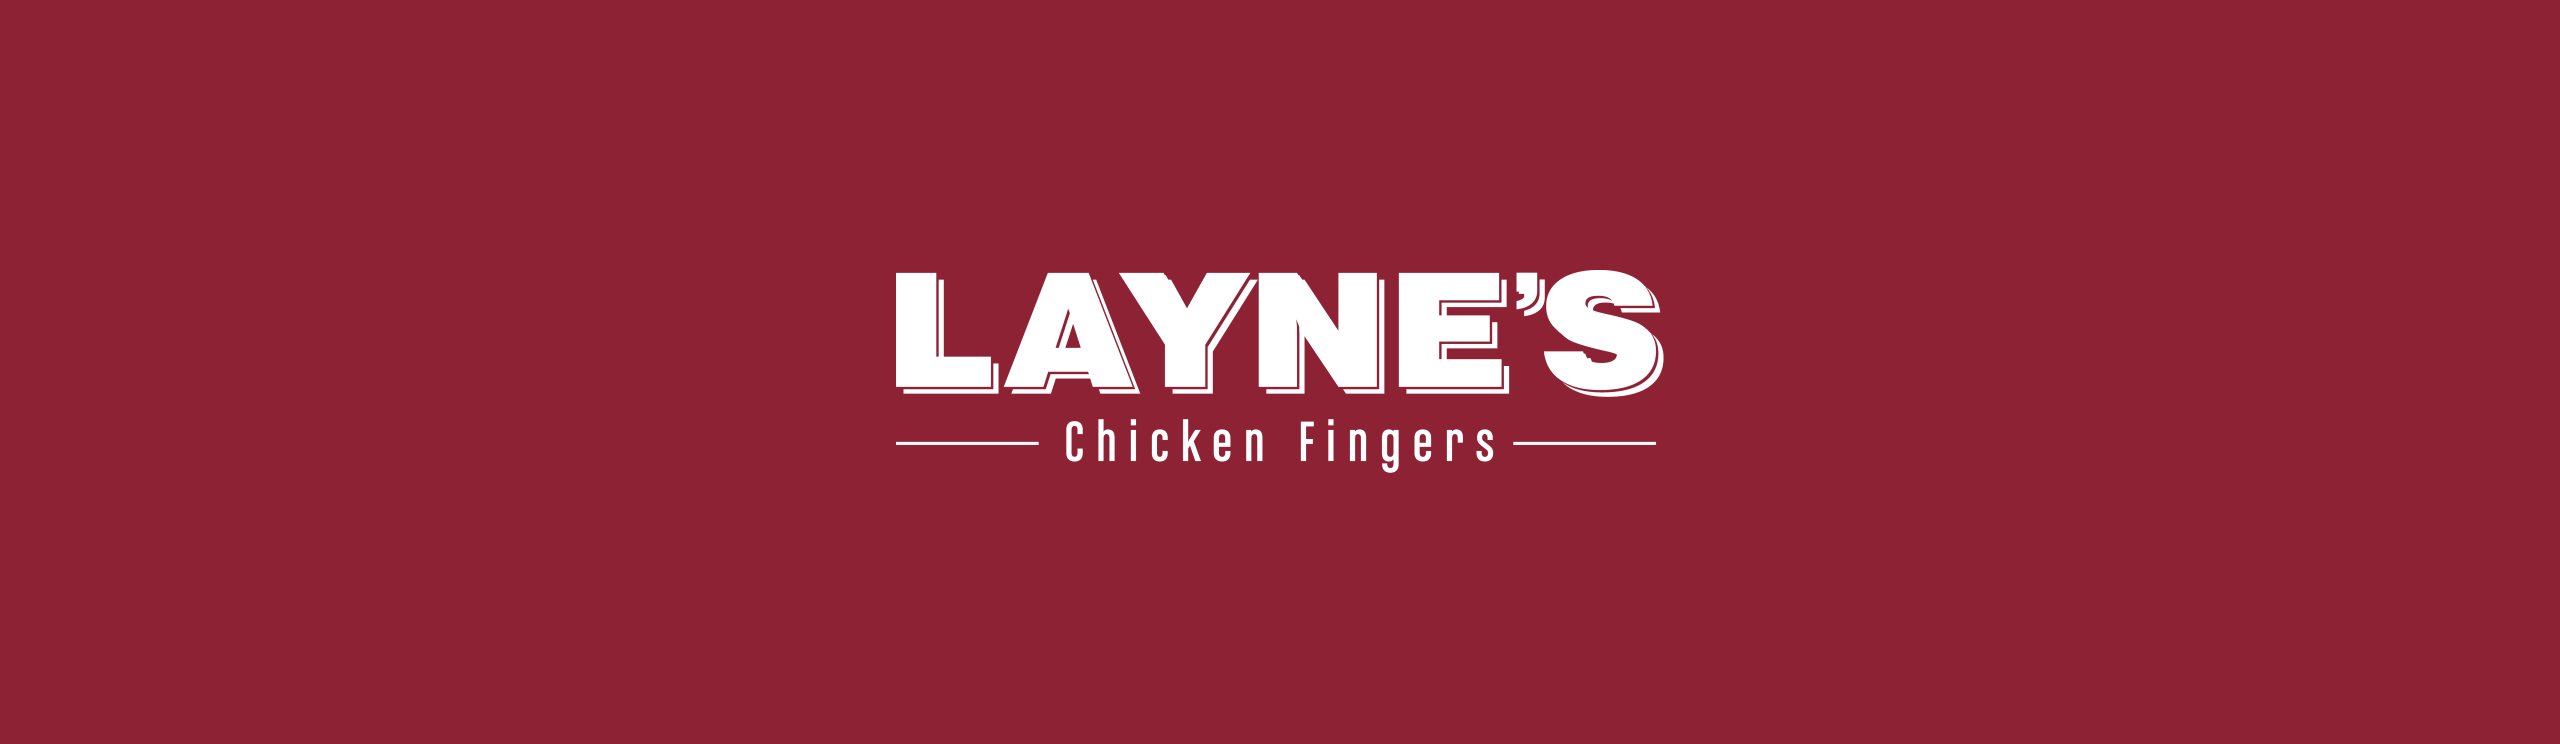 Laynes Chicken Fingers Banner